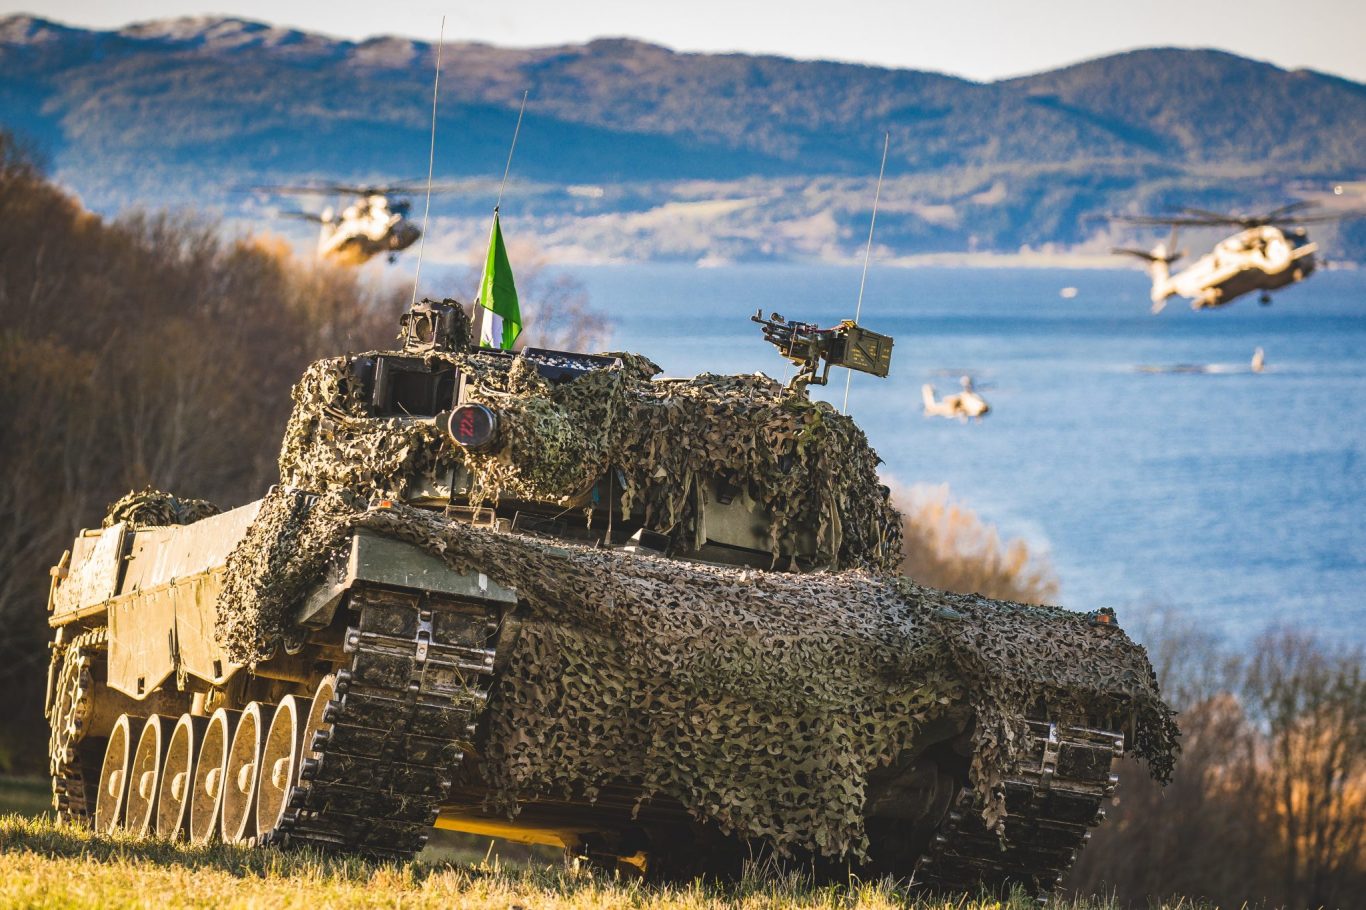 Norsk Leopard 2A4 stridsvogn fra Panserbataljonen, i forbindelse med styrkedemostrasjonen under NATO-øvelsen Trident Juncture 18 i Norge.